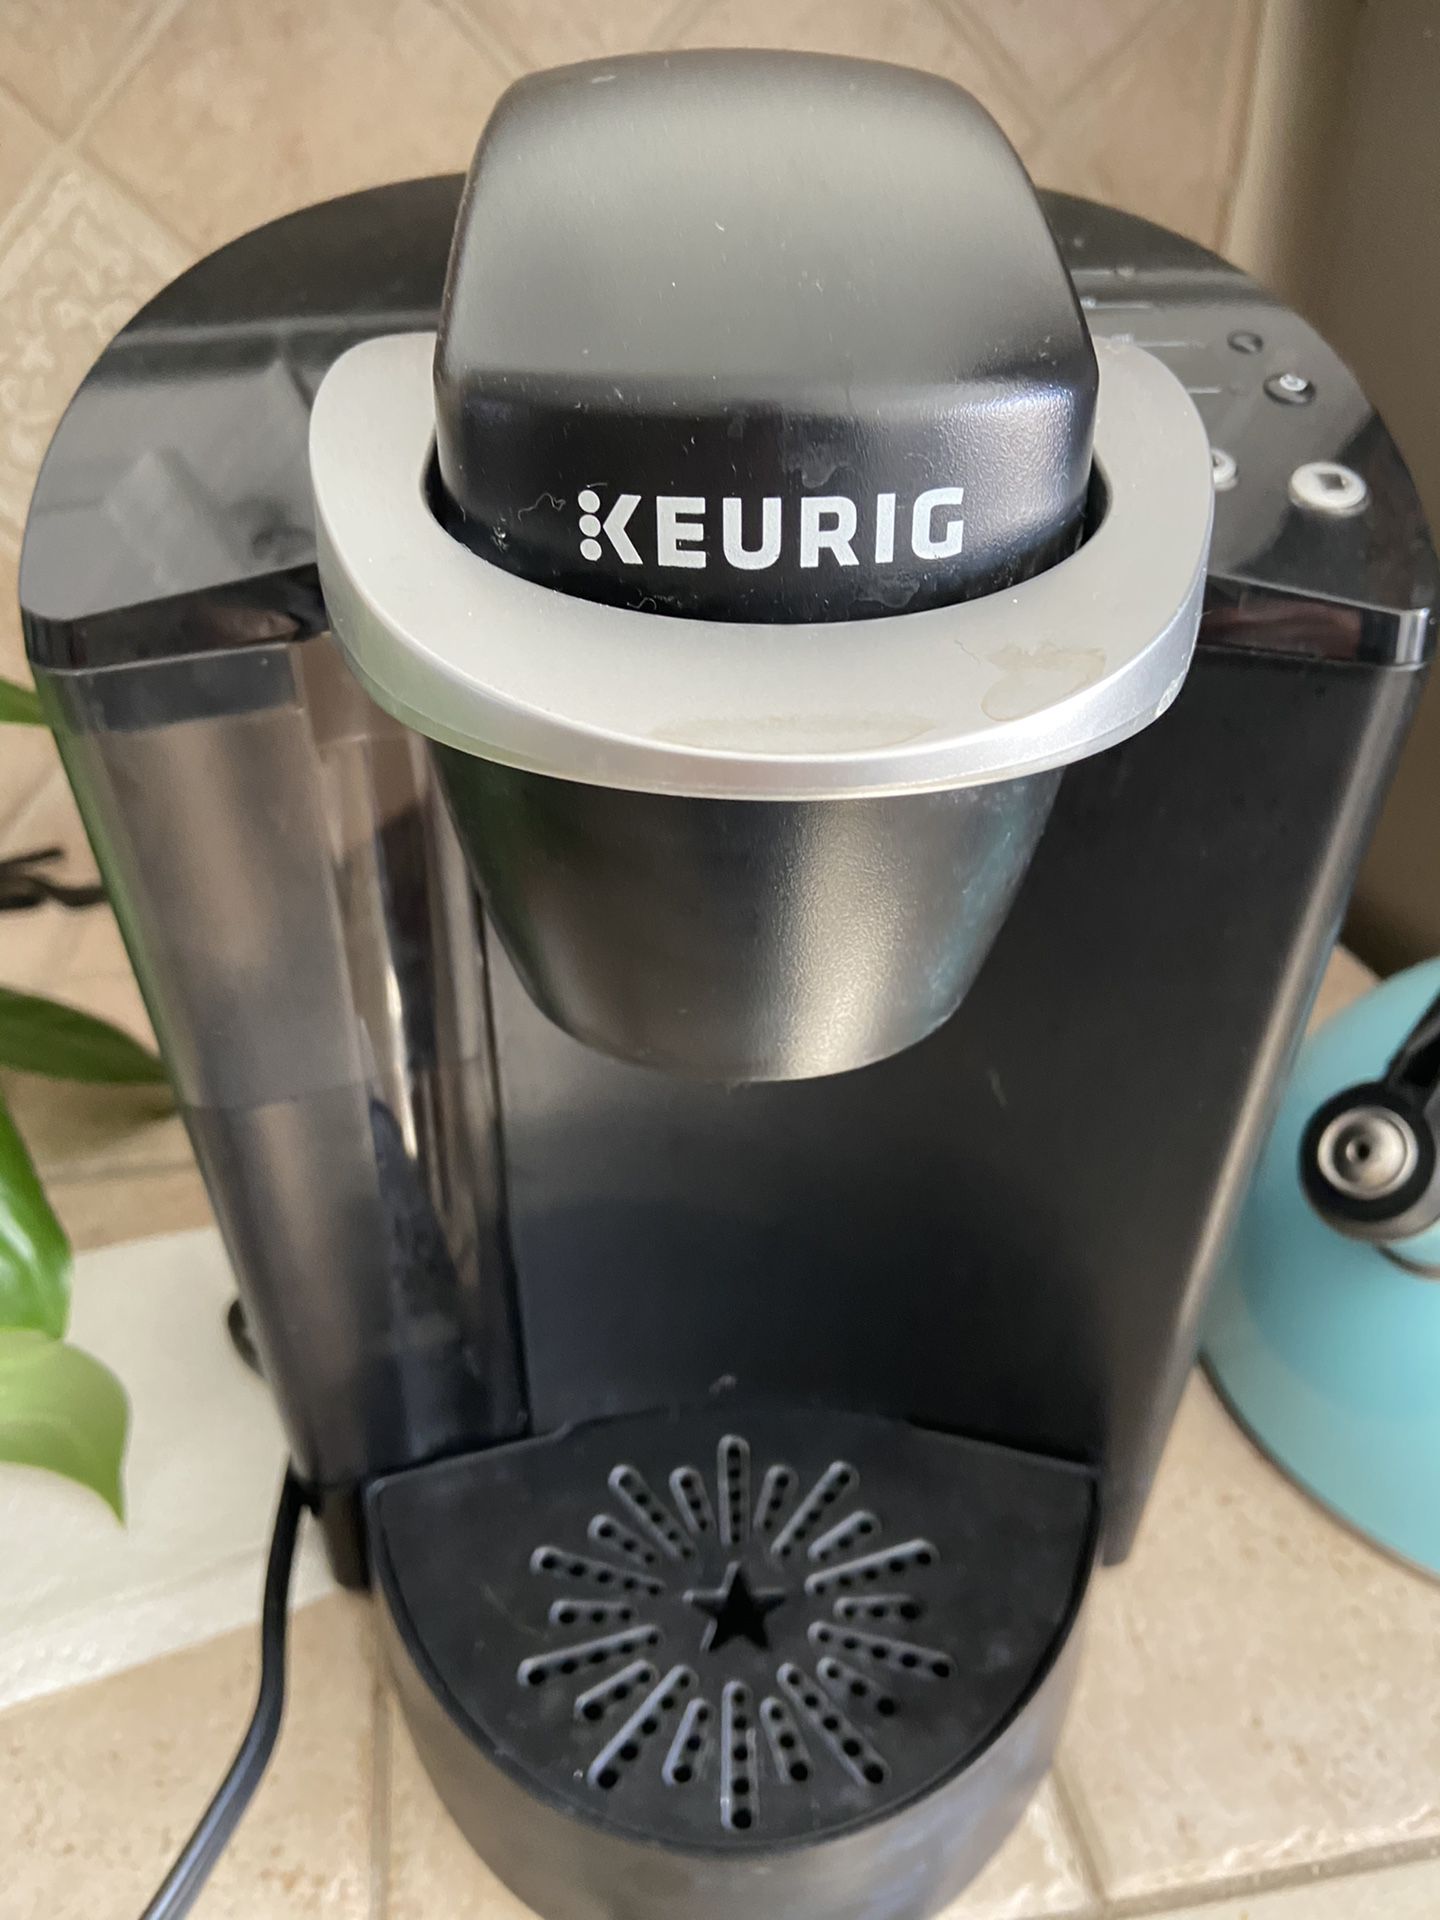 Keurig coffee maker used and functional